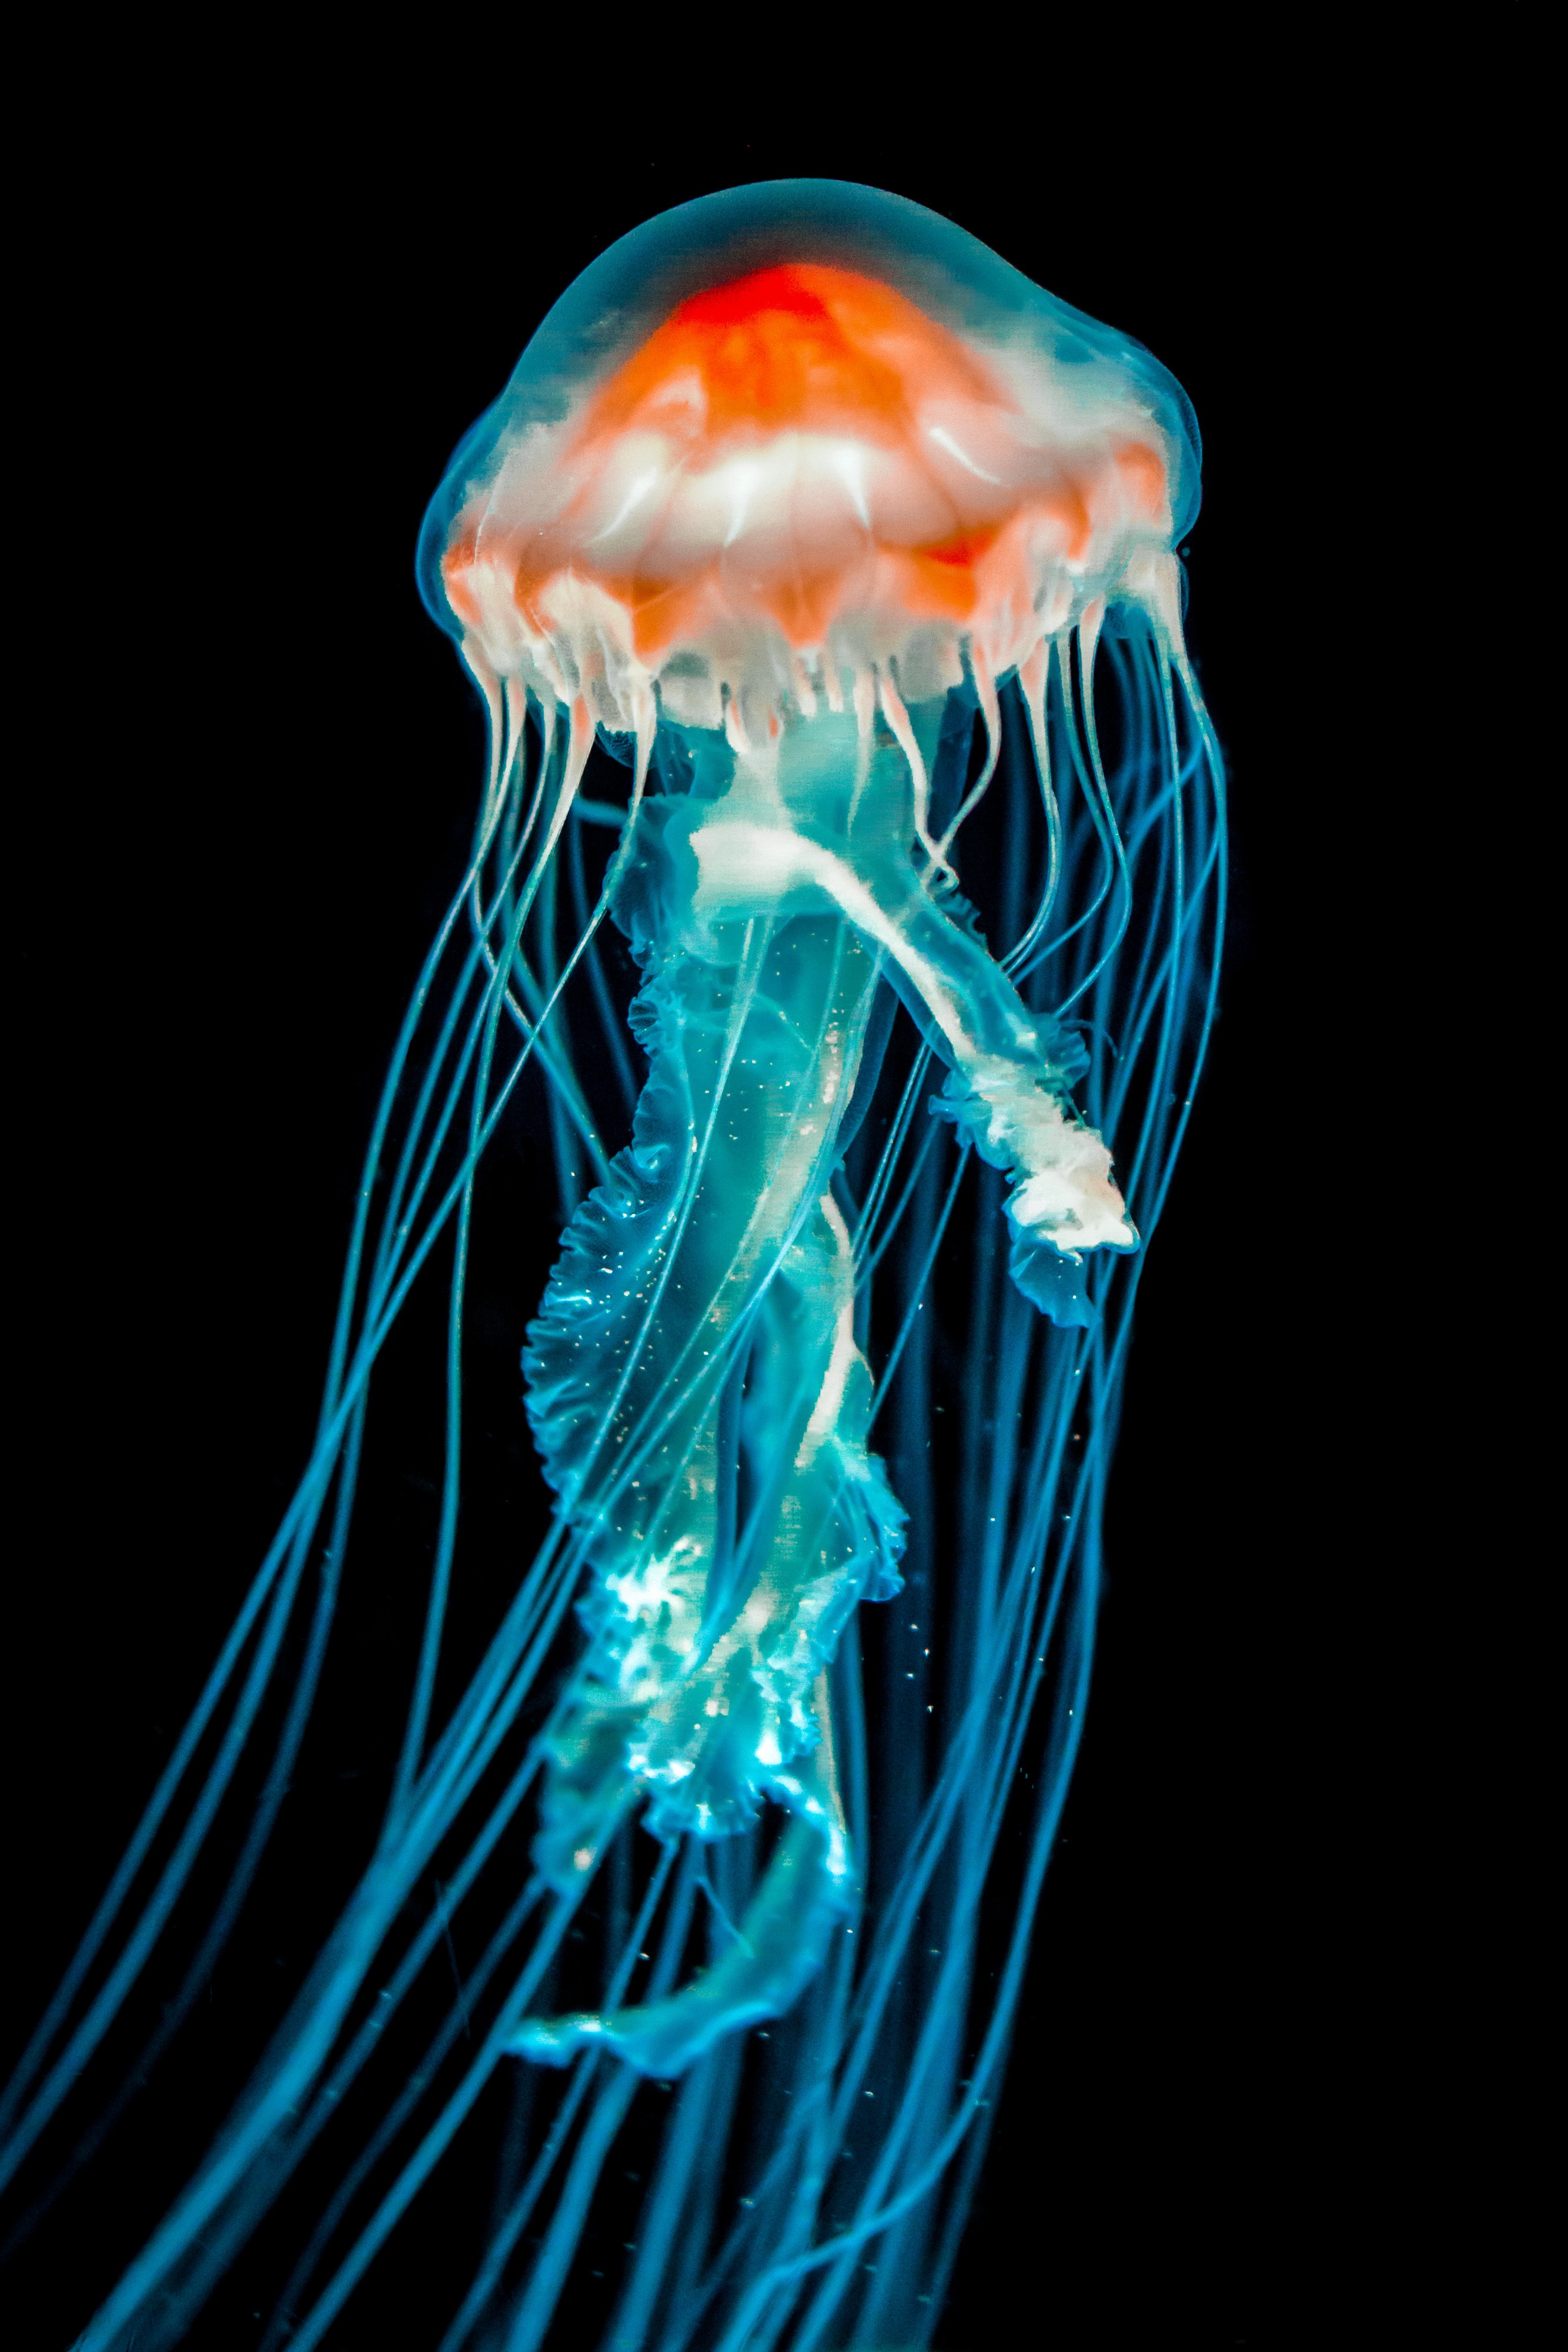 jellyfish, dark, animals, black, underwater world, tentacle cellphone